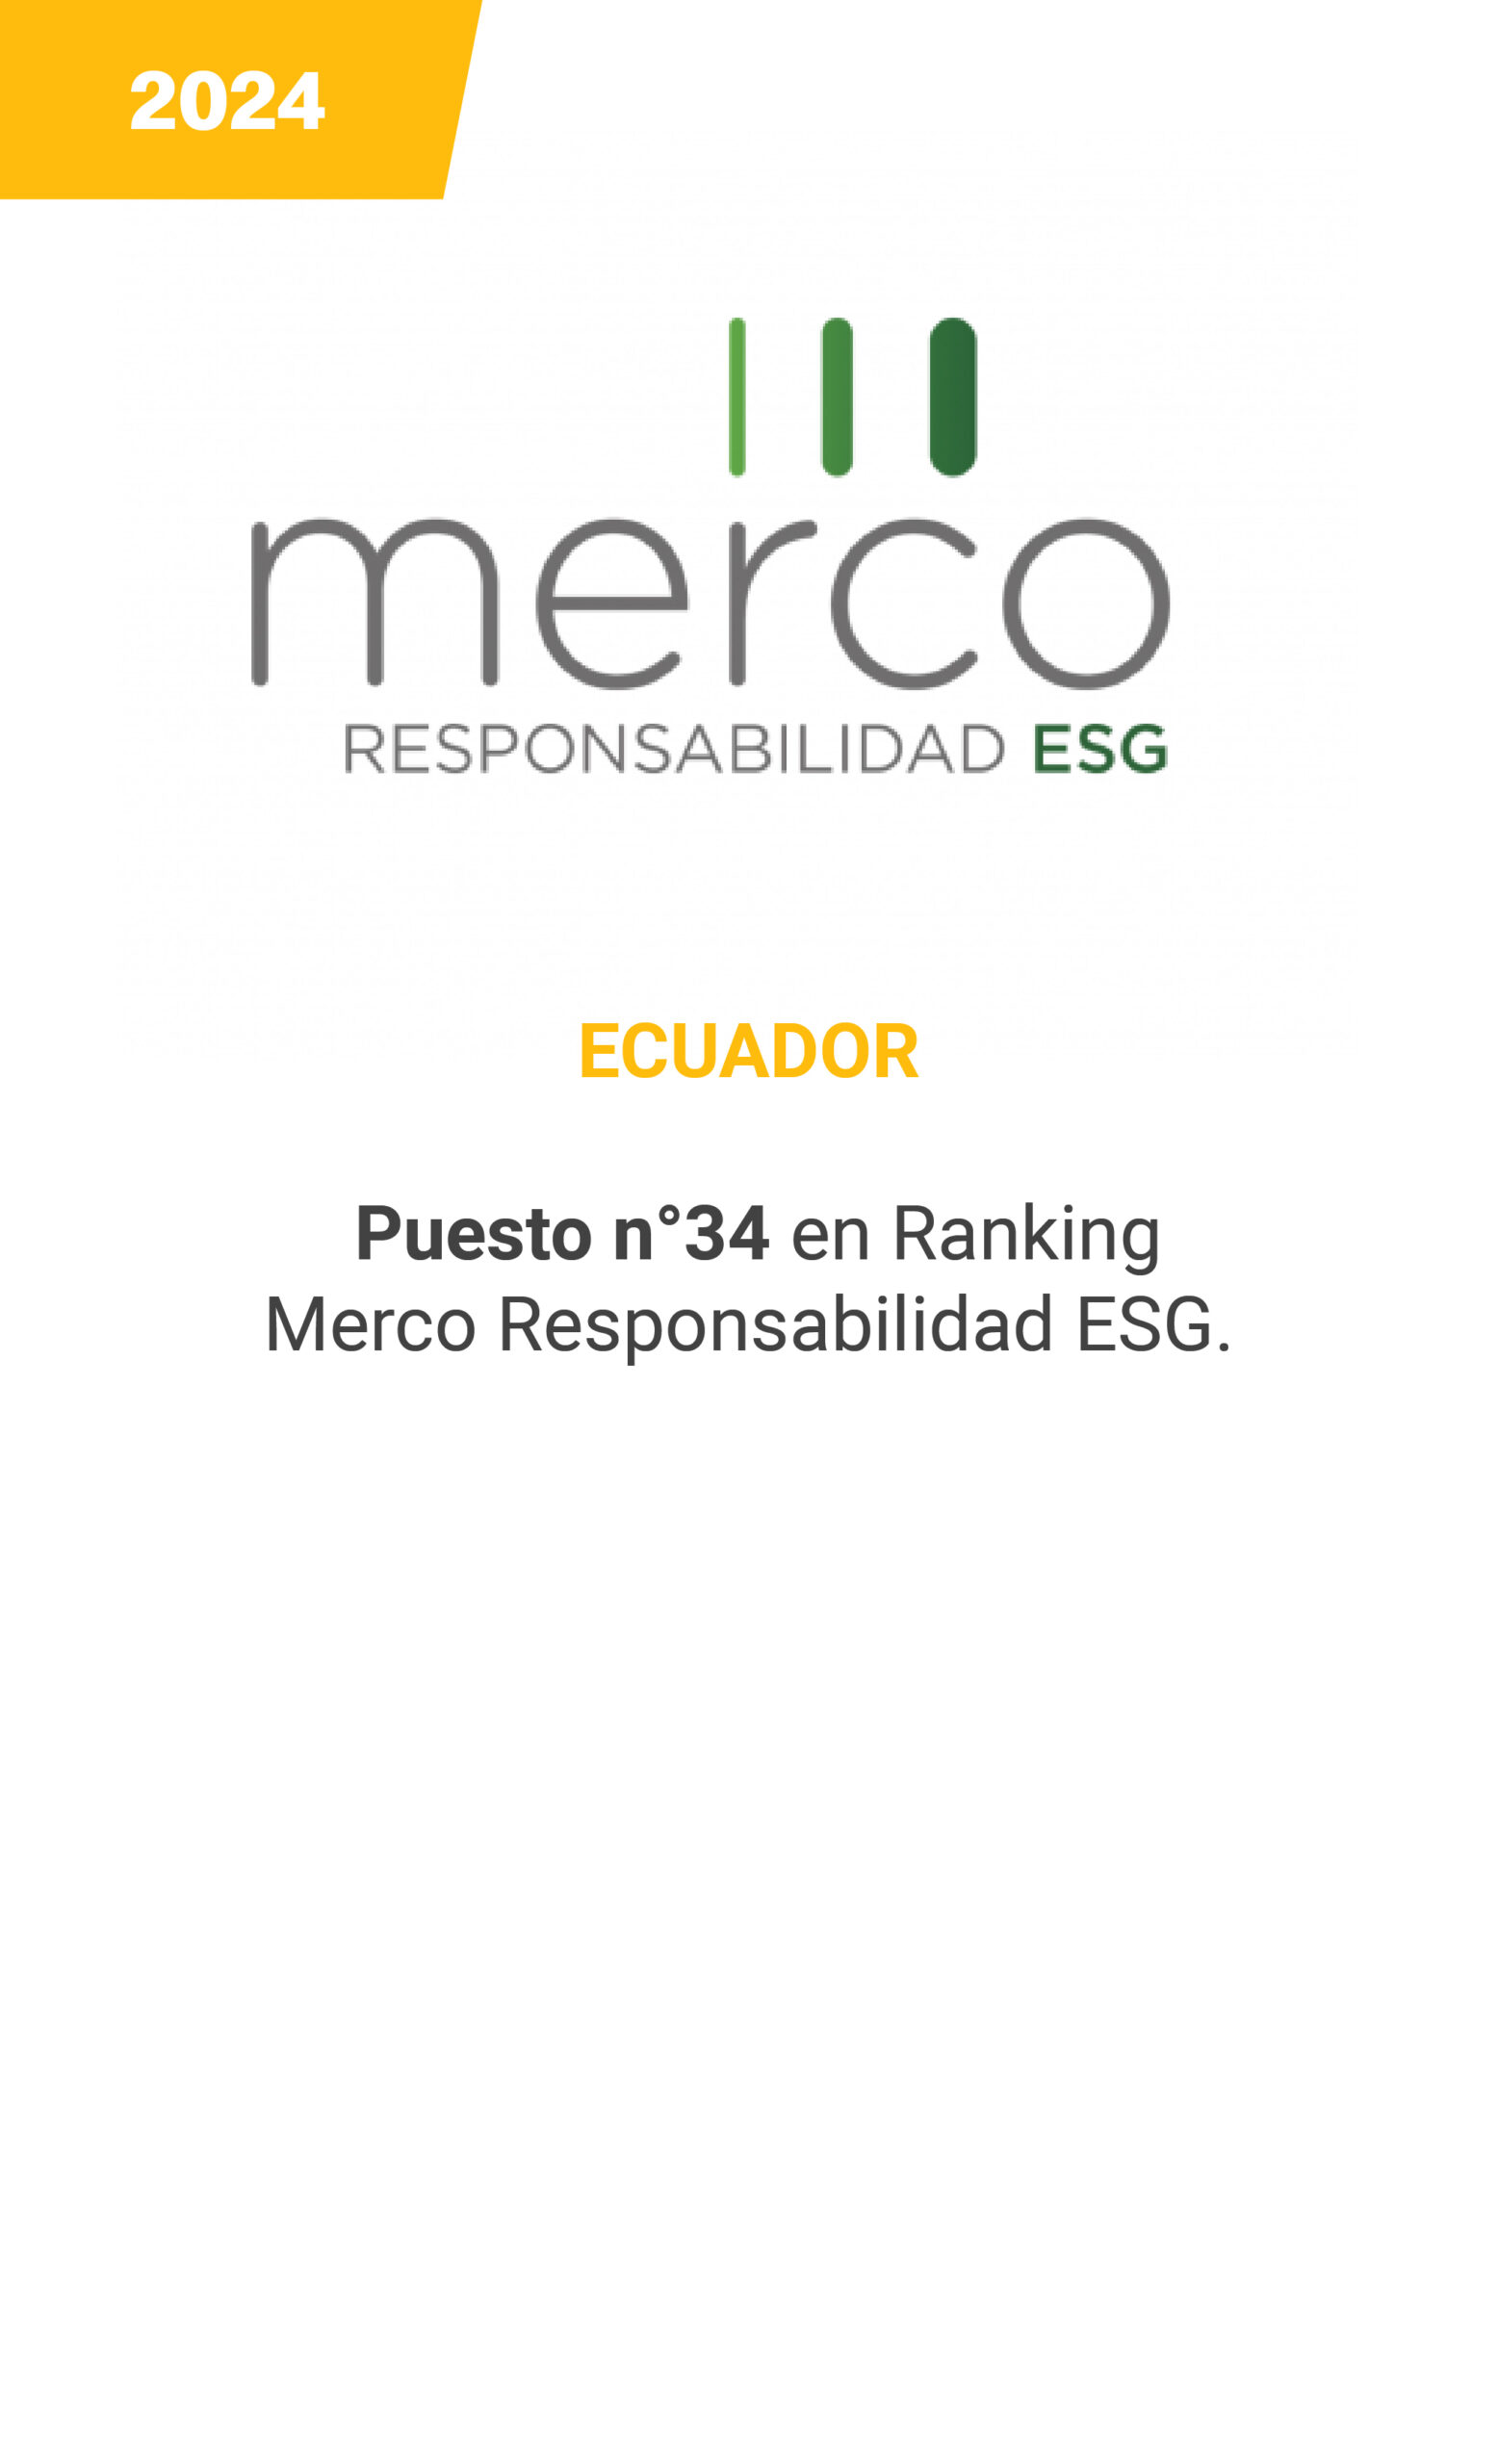 MERCO - Ecuador - 2024 - mobile